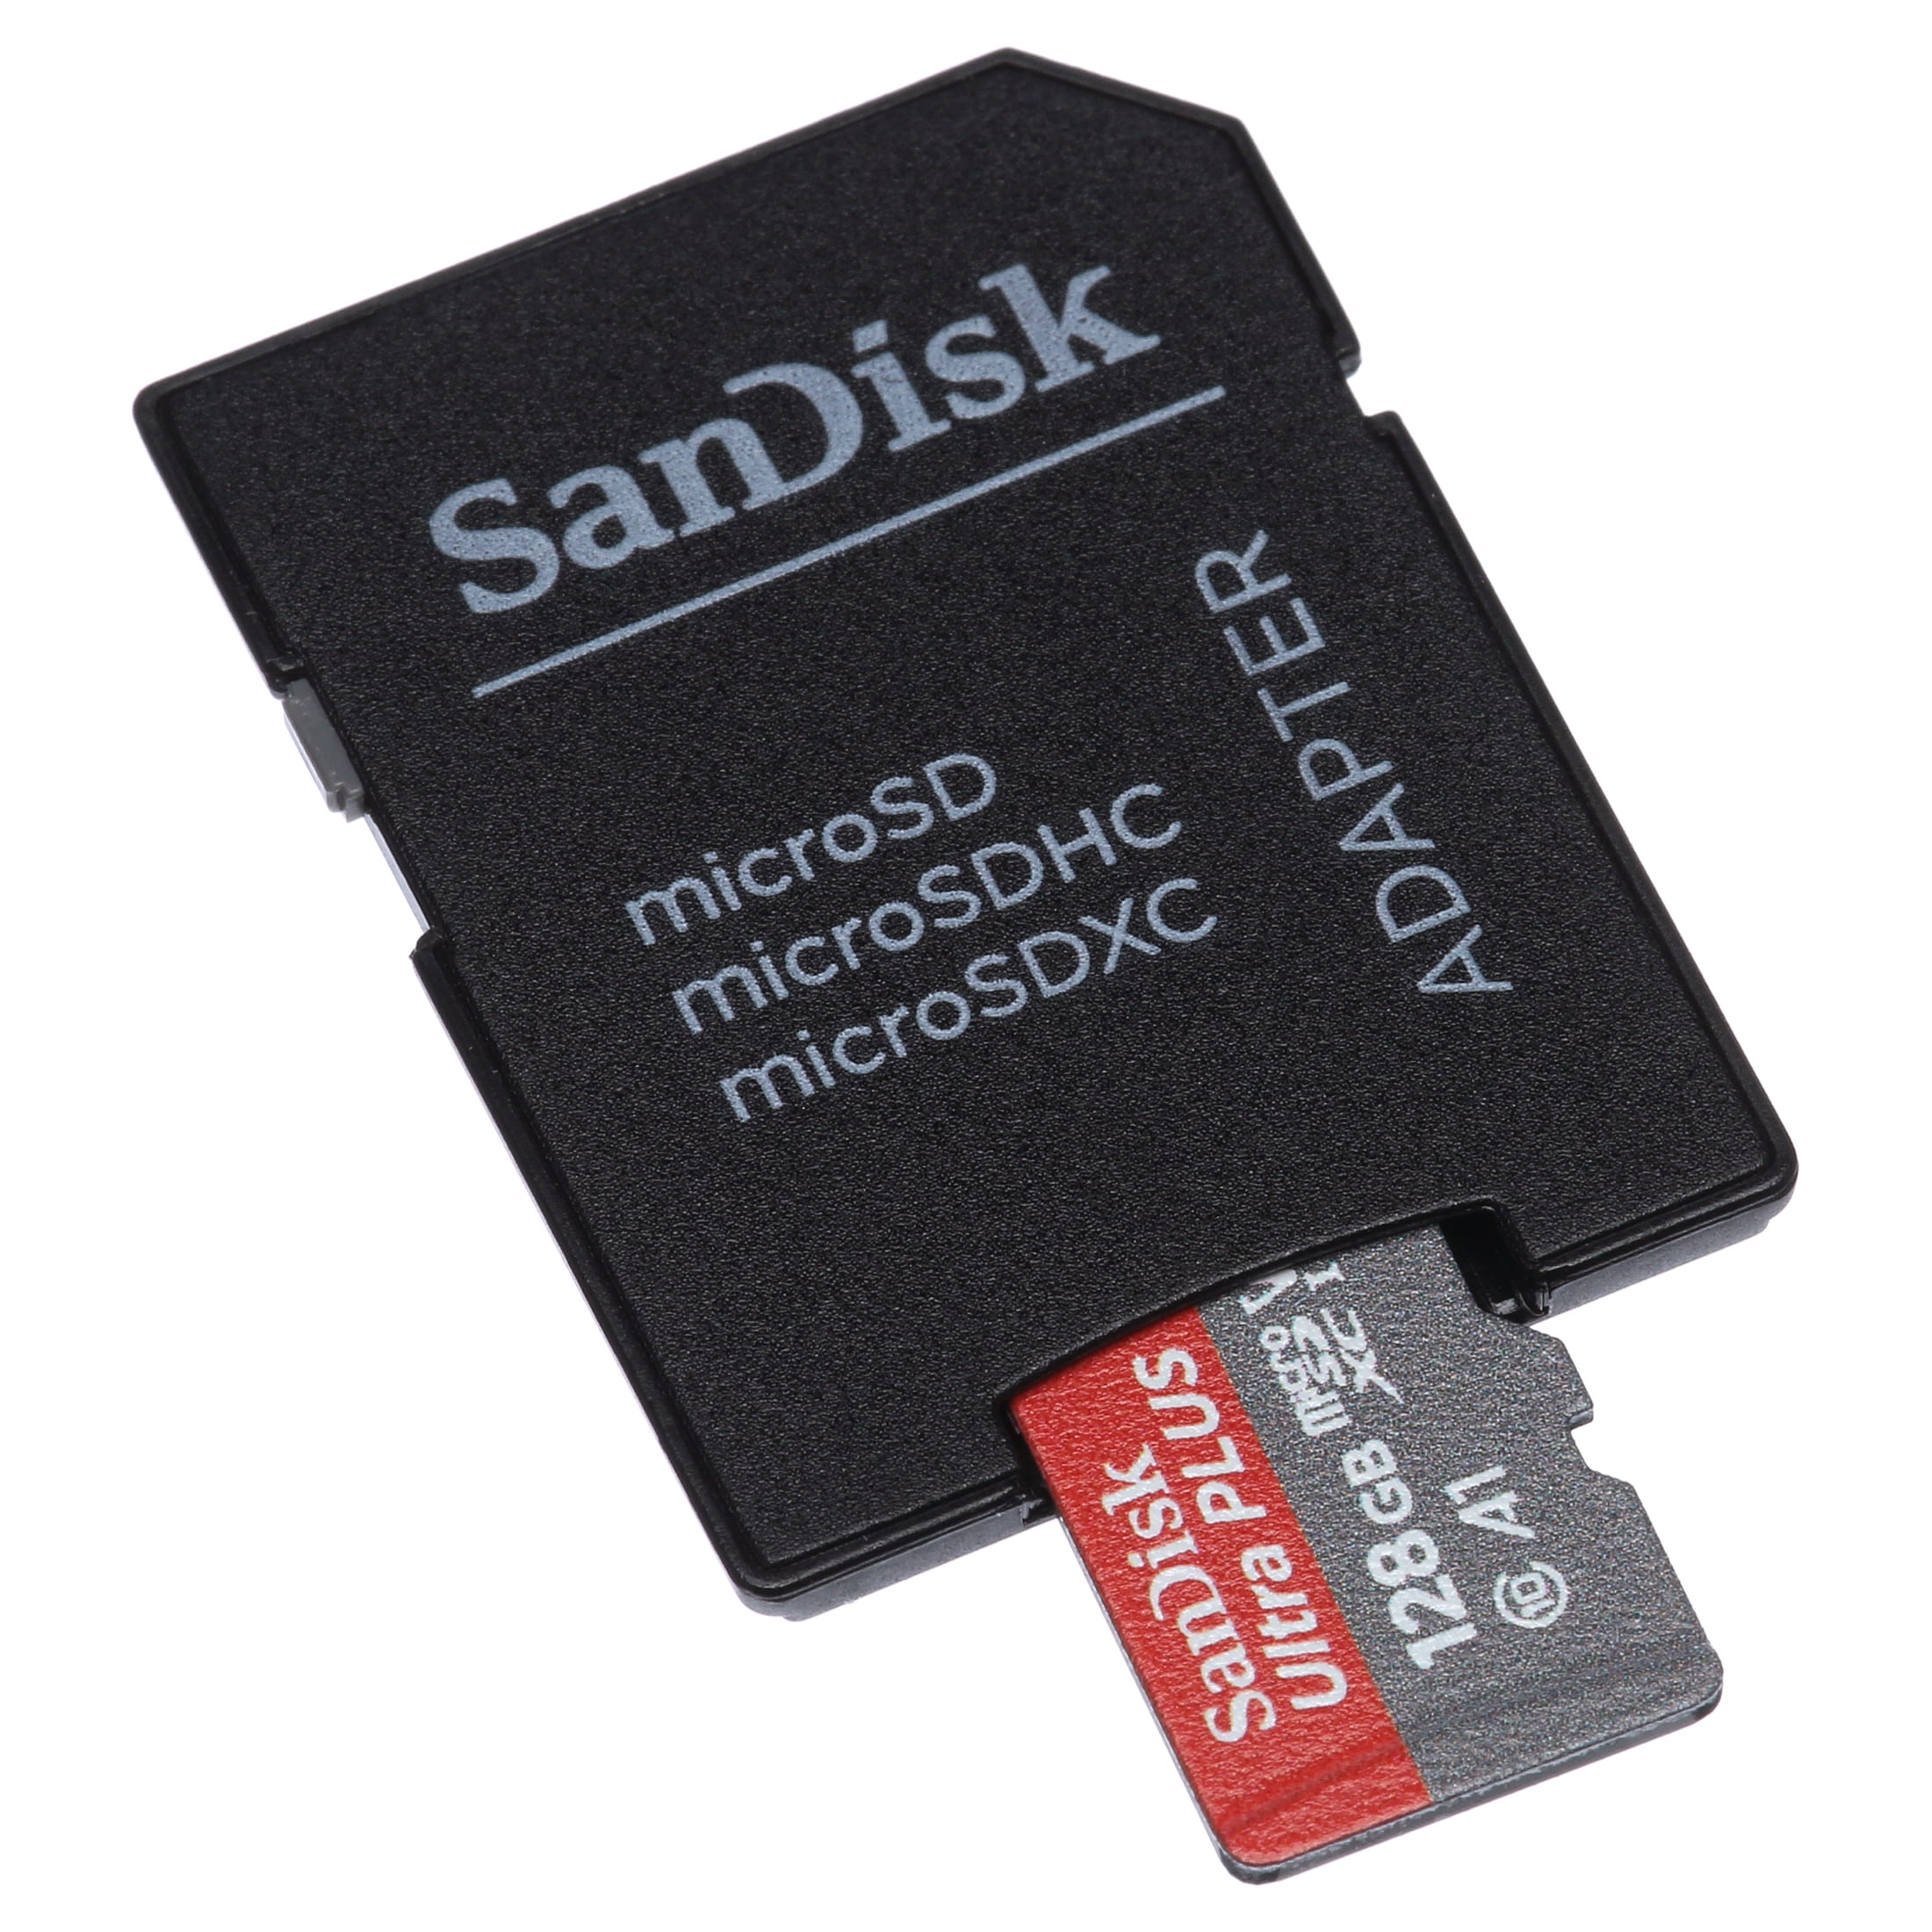 Carte Sandisk Ultra SD 128 Go